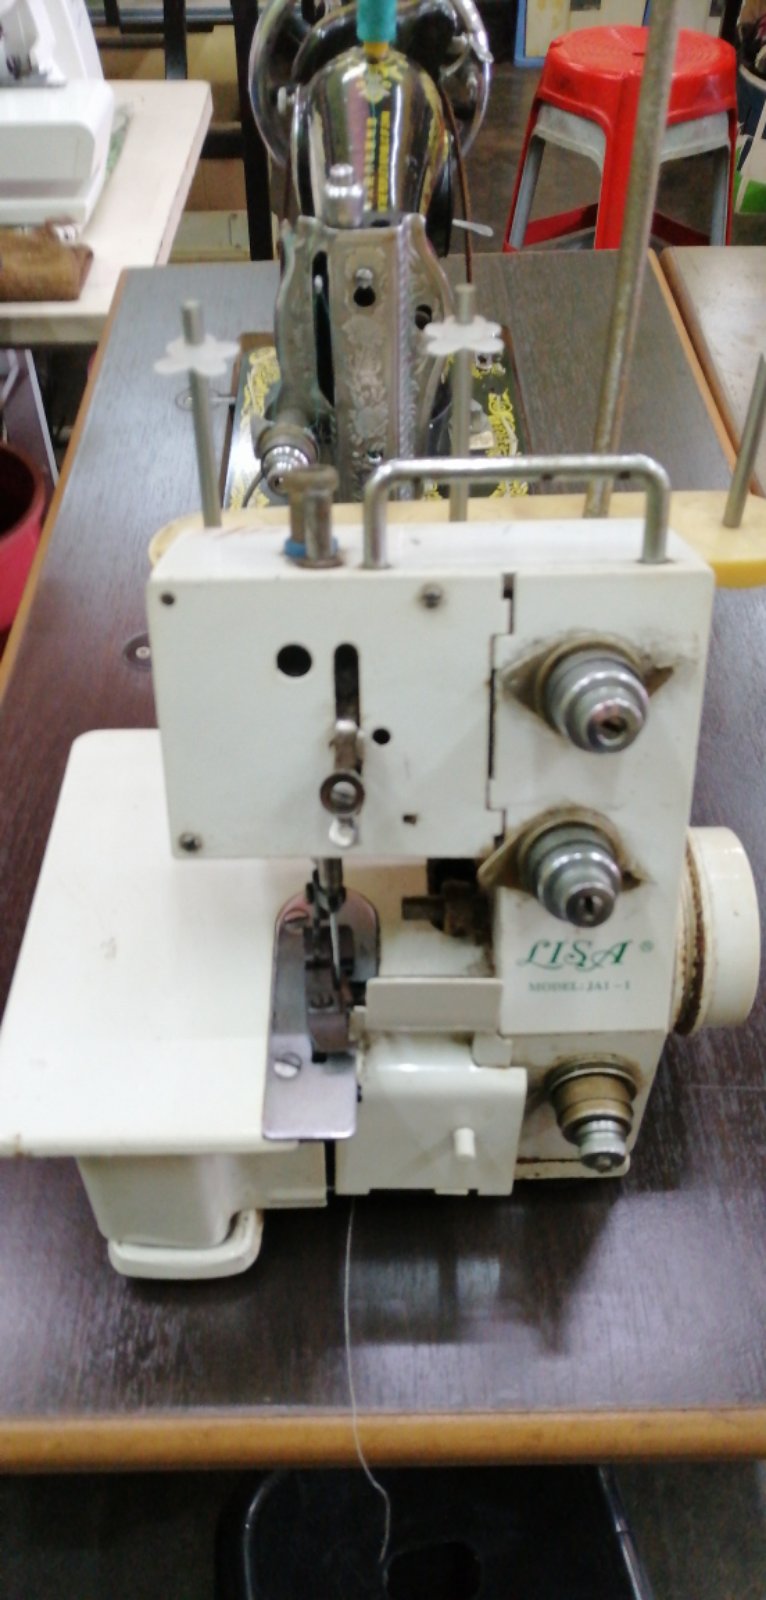 Repaie Sevis Portable Lisa Overlock Sewing Machine 